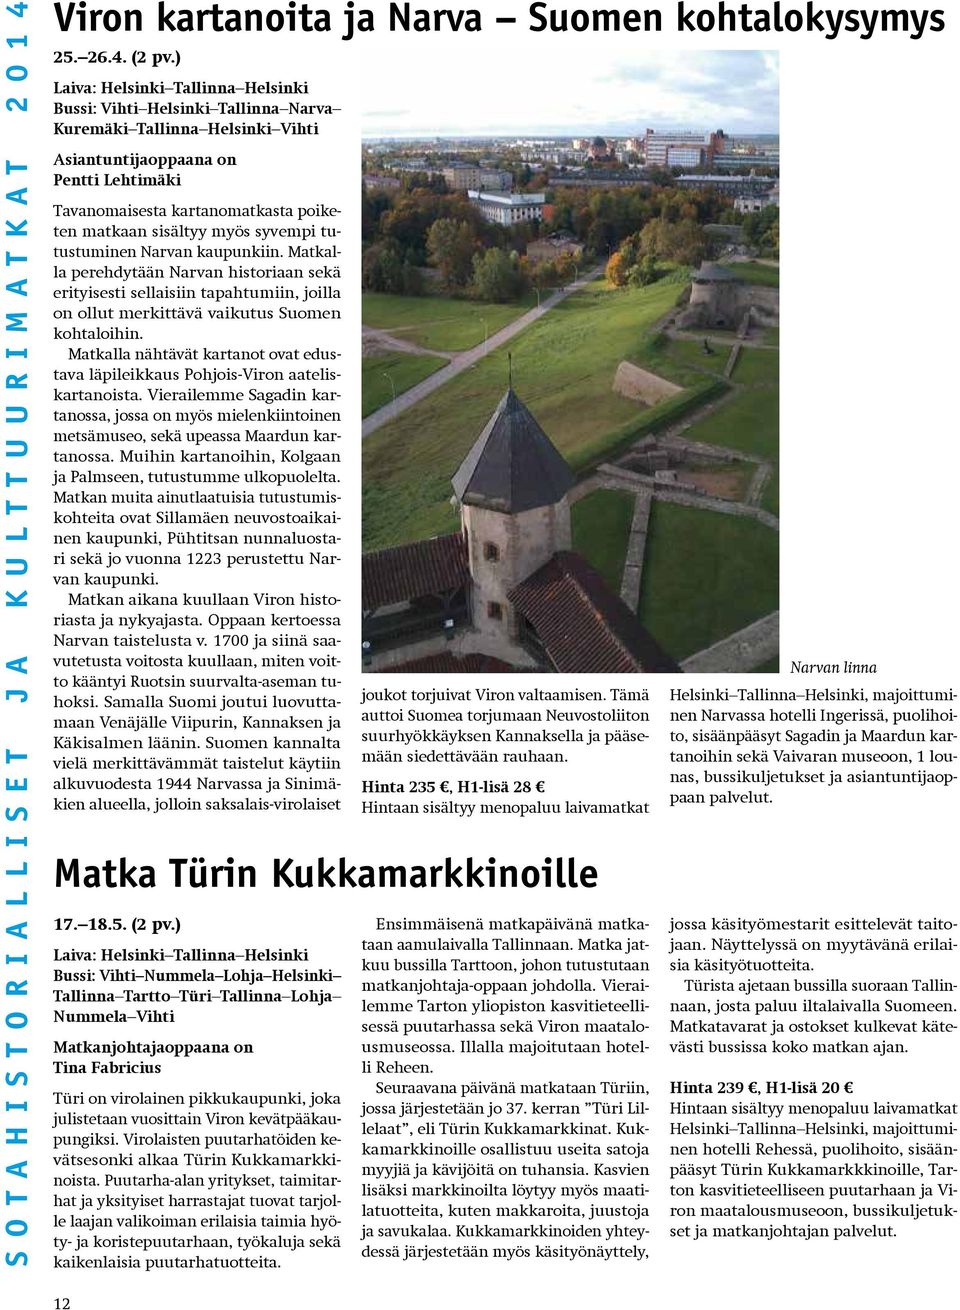 sisältyy myös syvempi tutustuminen Narvan kaupunkiin. Matkalla perehdytään Narvan historiaan sekä erityisesti sellaisiin tapahtumiin, joilla on ollut merkittävä vaikutus Suomen kohtaloihin.